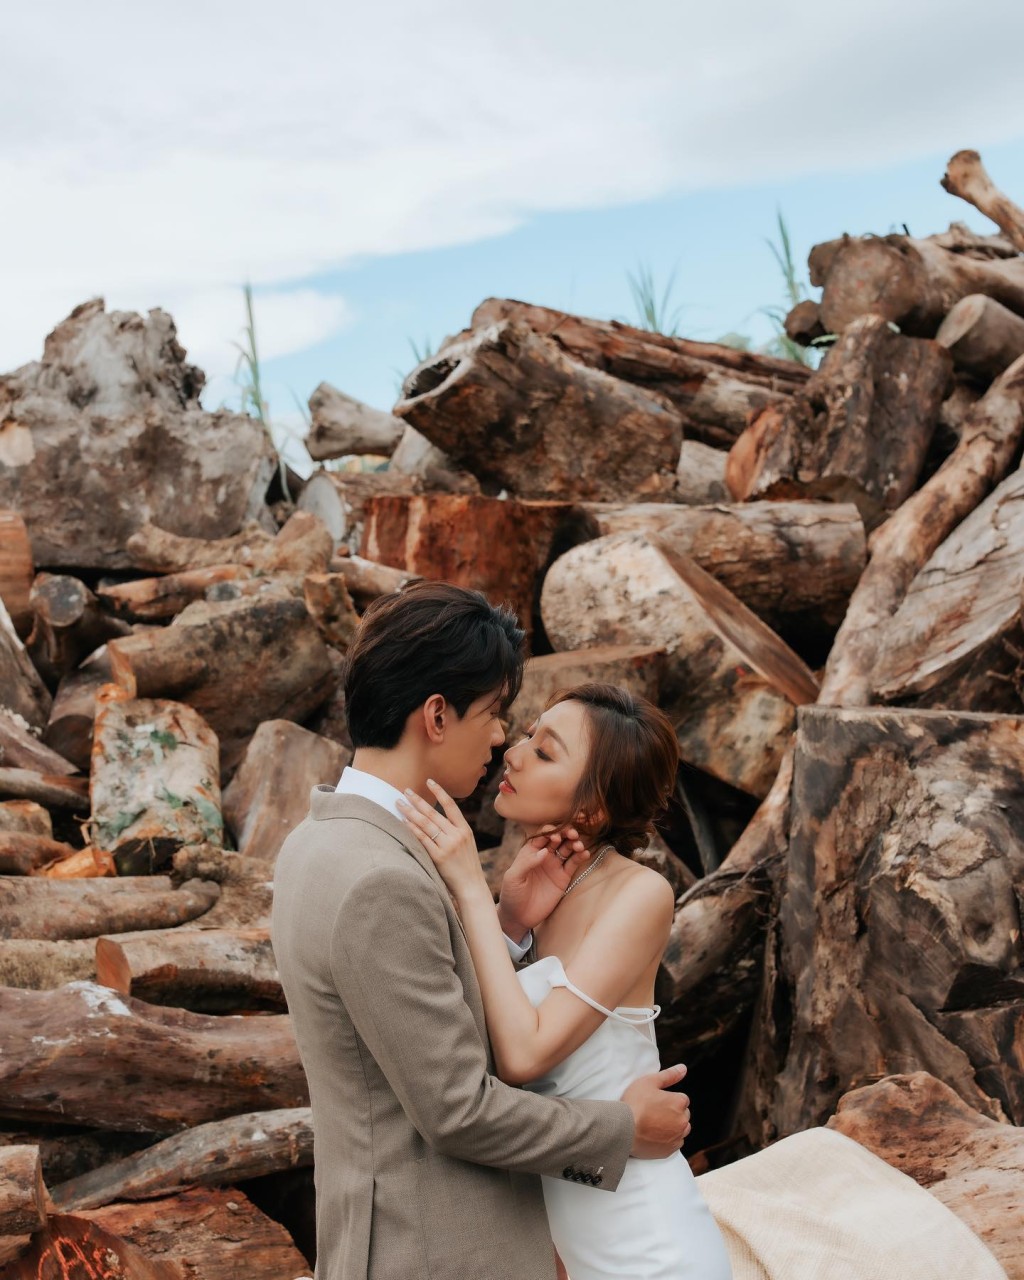 林奕匡和太太李靄璣兩年前再影婚照慶祝木婚。